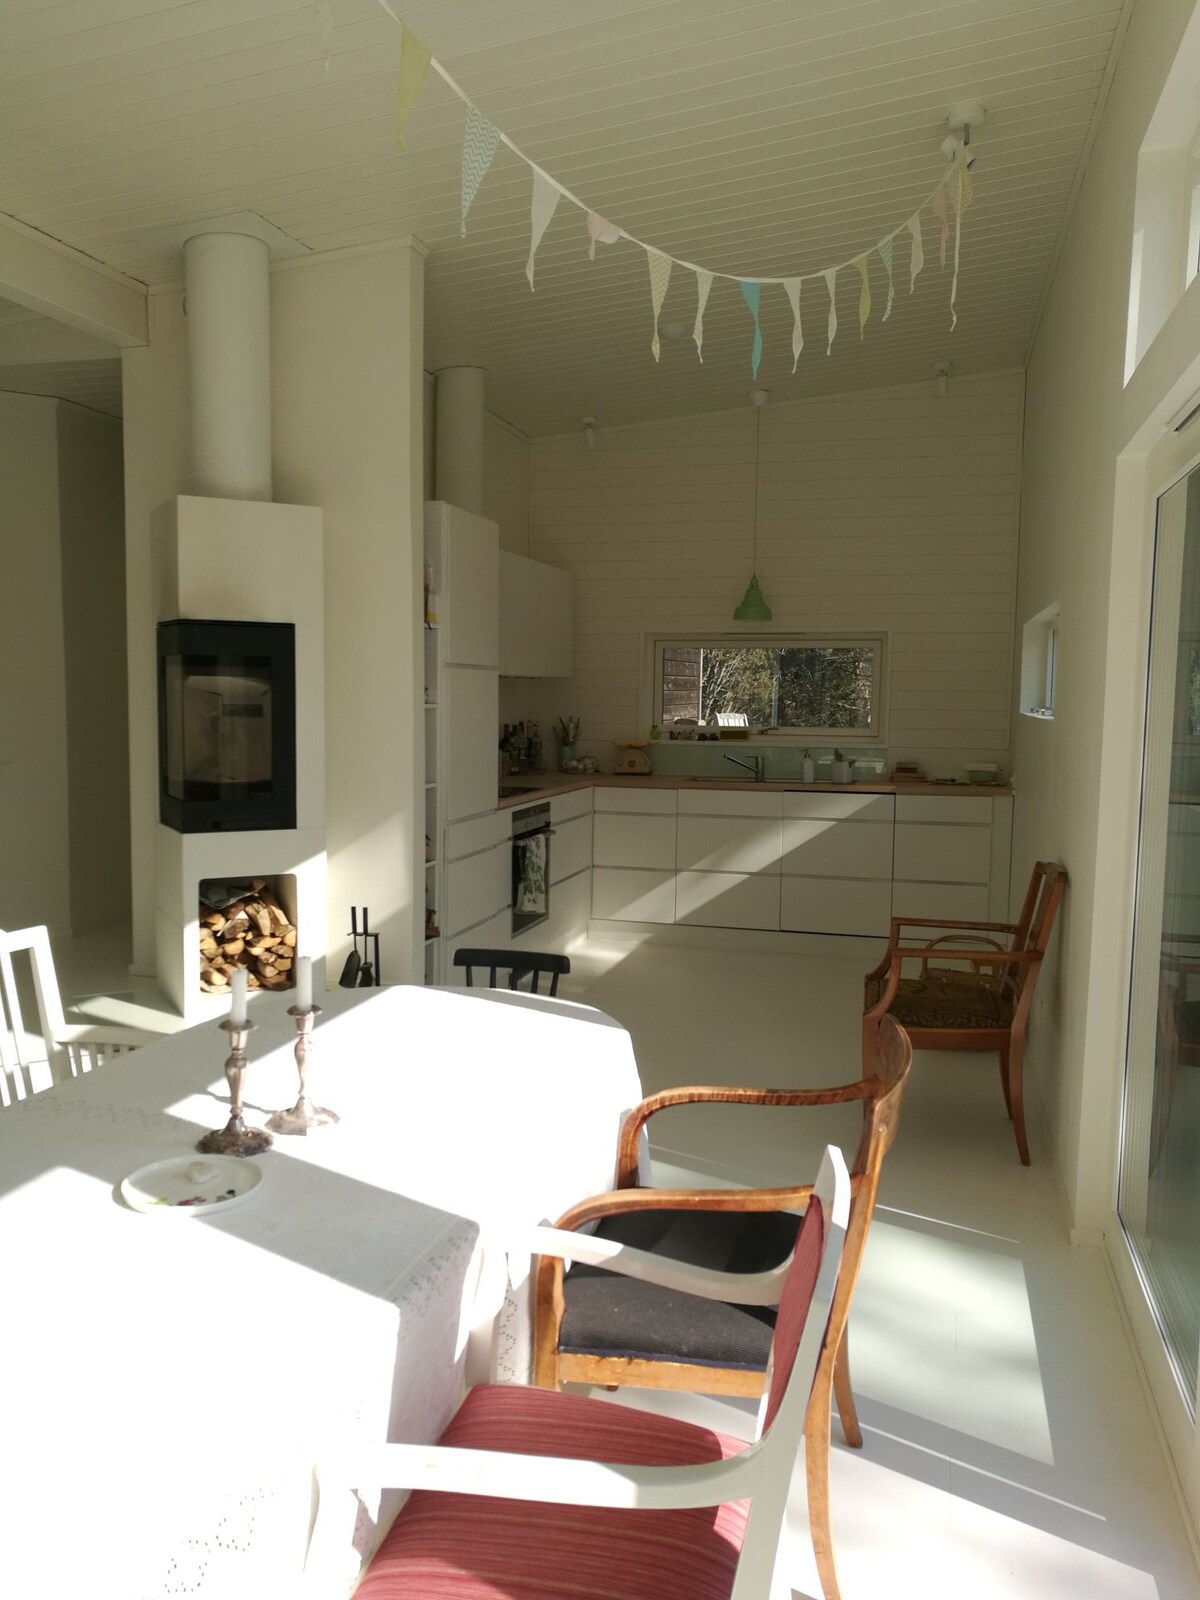 Runmarö现代舒适的群岛房屋